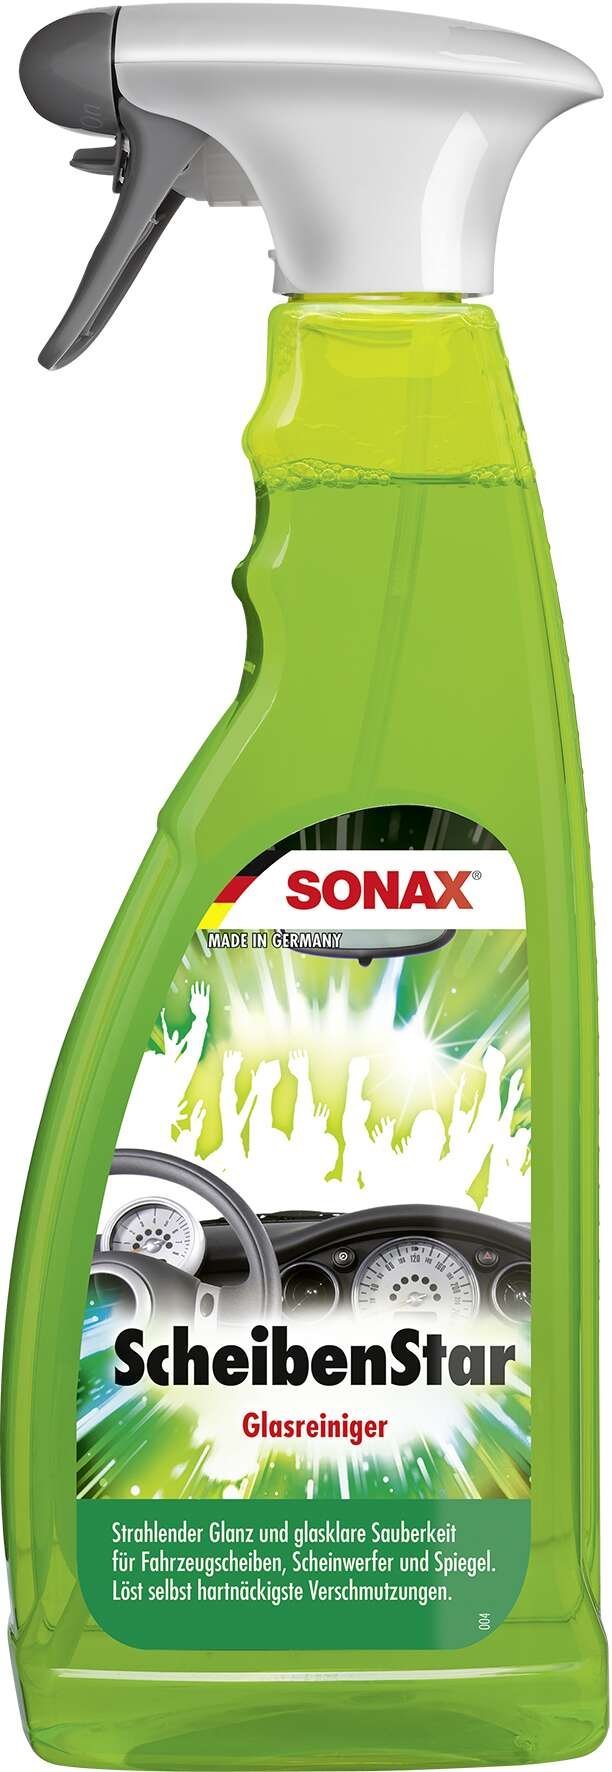 SONAX ScheibenStar Vaporisateur PET 750 ml nettoyant pour vitres